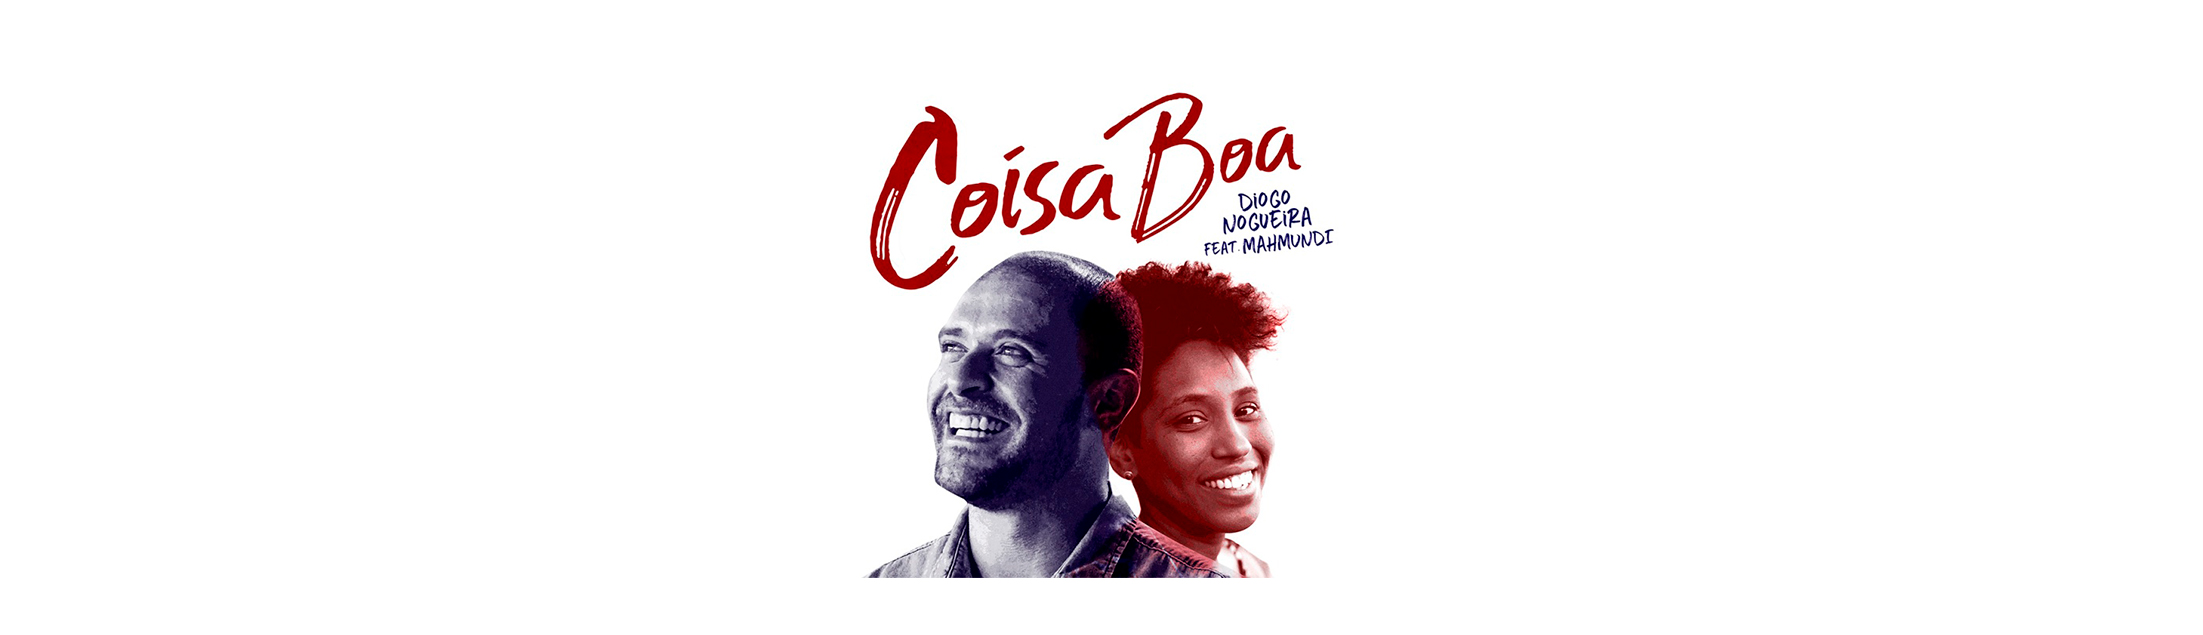 Diogo Nogueira lança o single 'Coisa Boa' com participação de Mahmundi